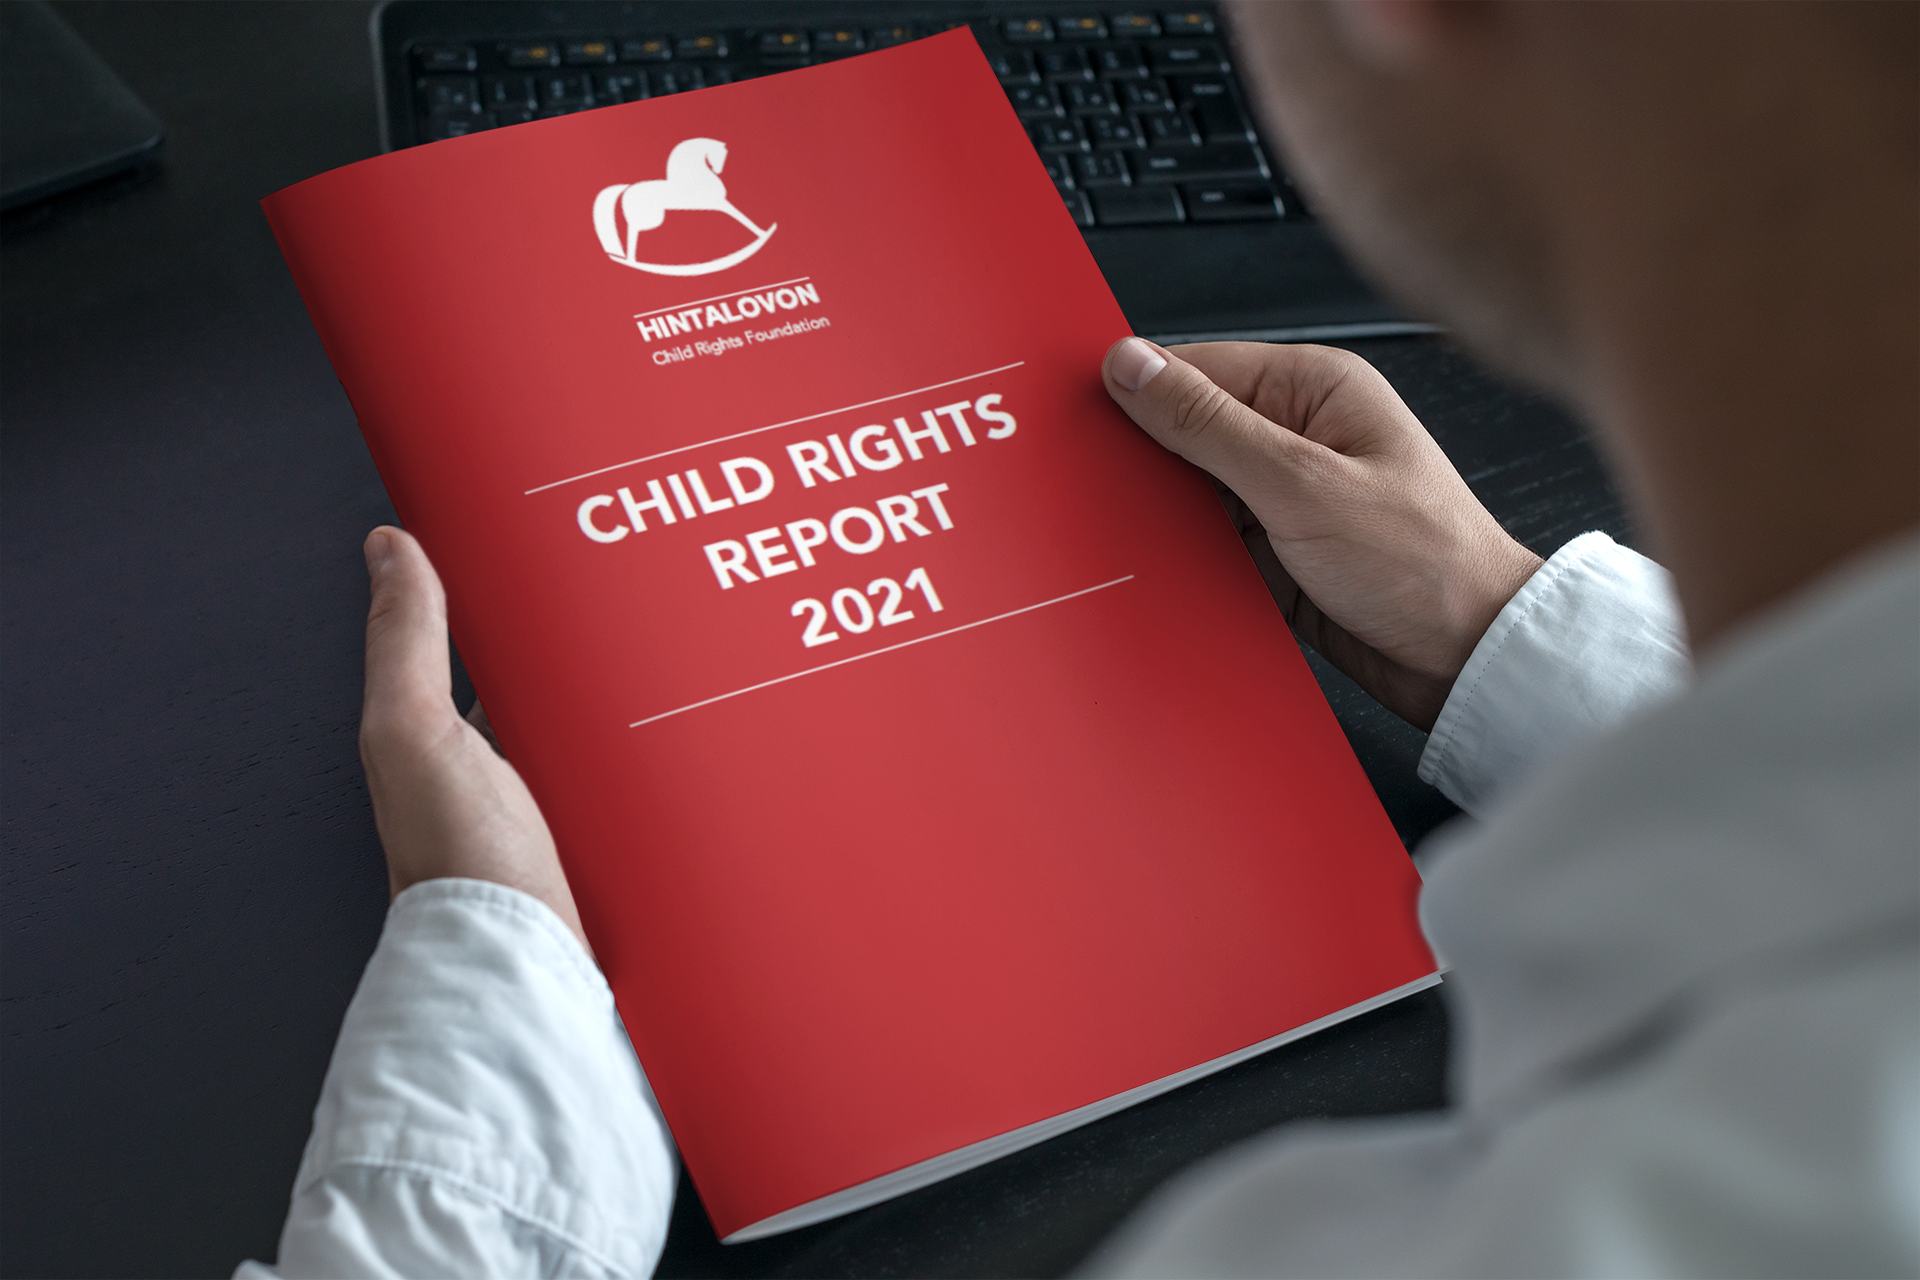 Child Rgihts Report 2021